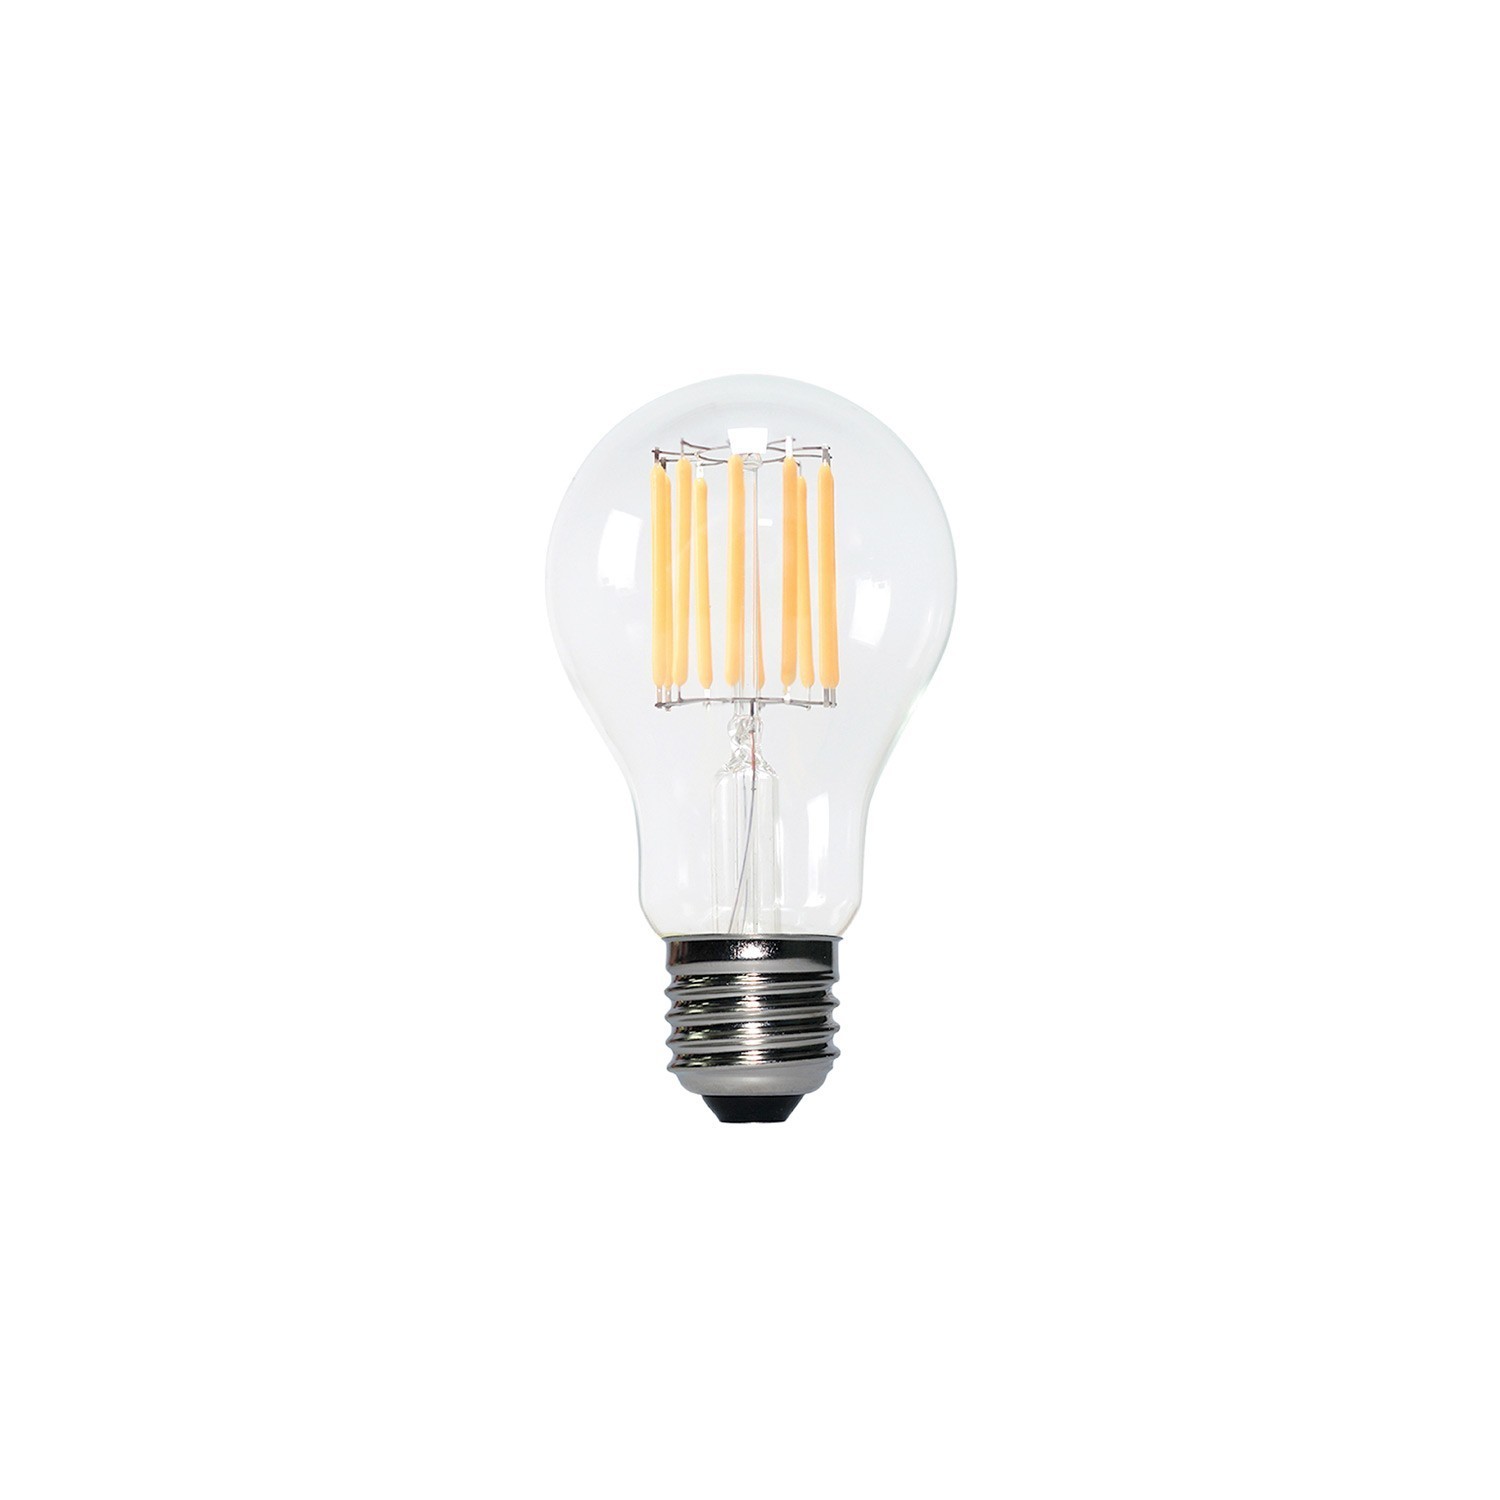 Ampoule LED Transparente B02 Ligne 5V Filament vertical Goutte d'eau A60 1,3W 110Lm E27 2500K Dimmable